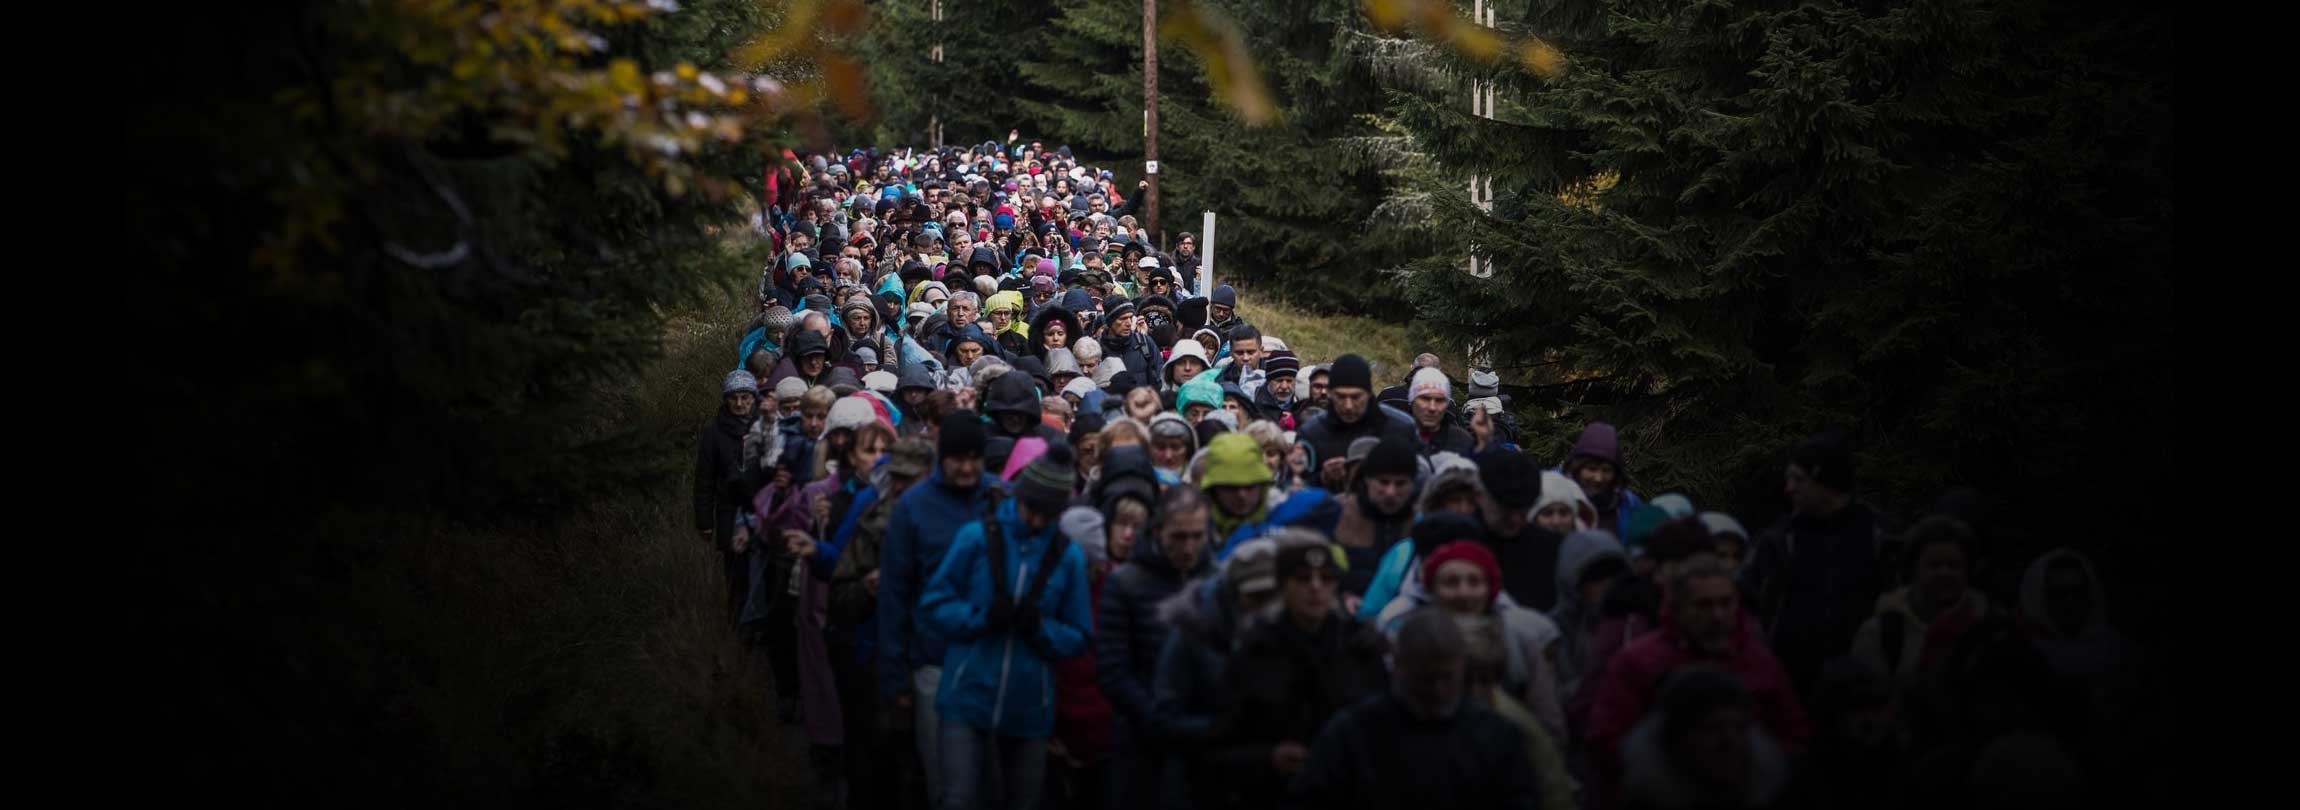 Nas fronteiras da Polônia, uma multidão com o Rosário nas mãos